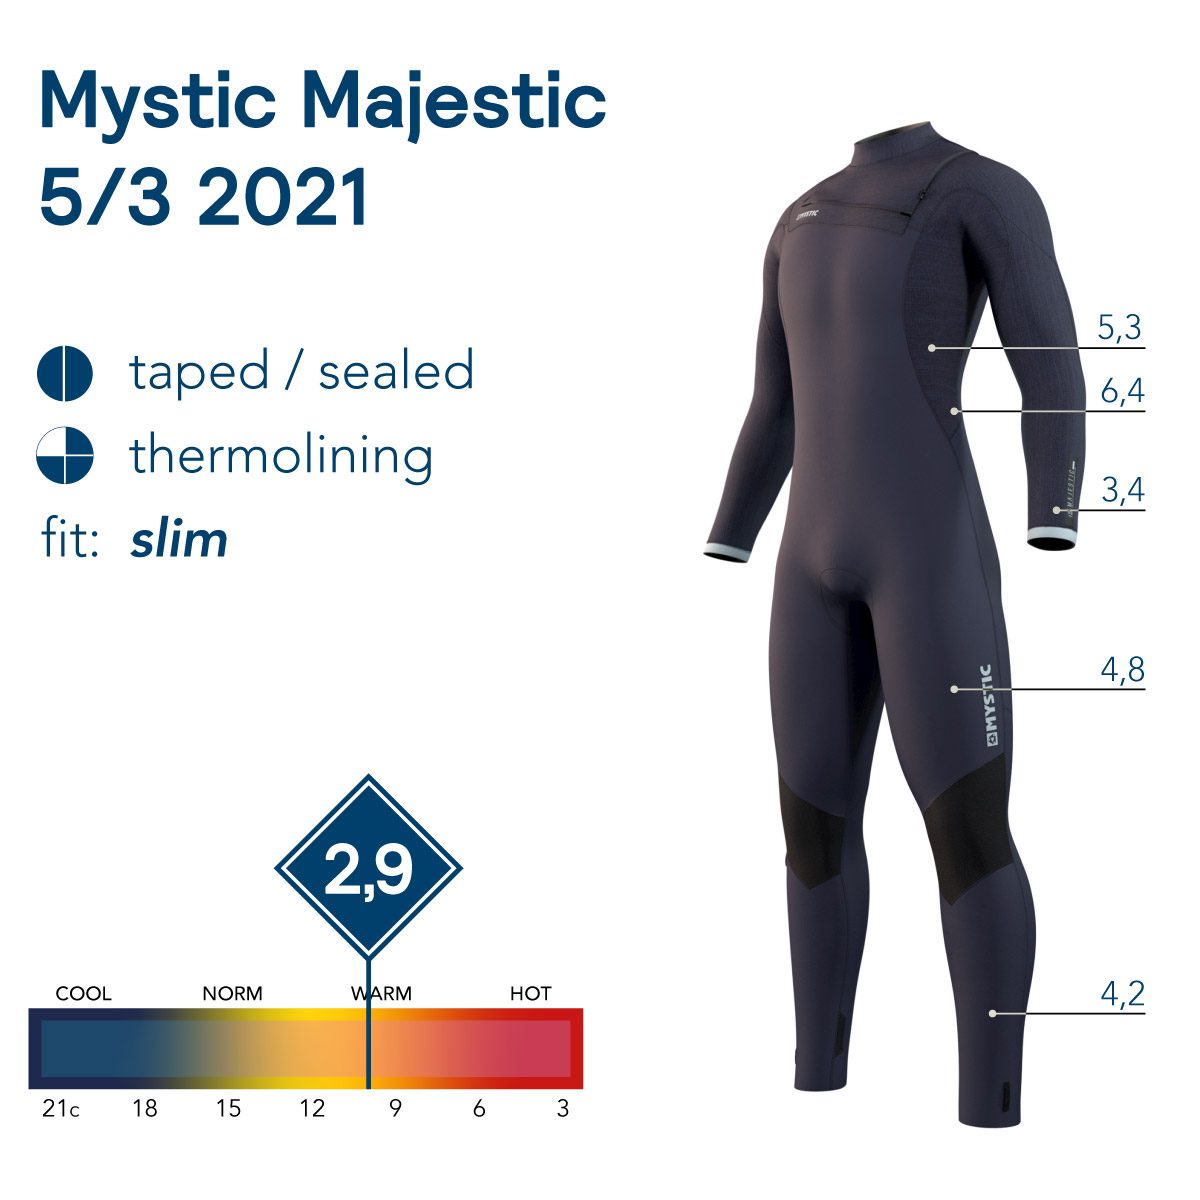 Mystic Majestic 2021 Versus